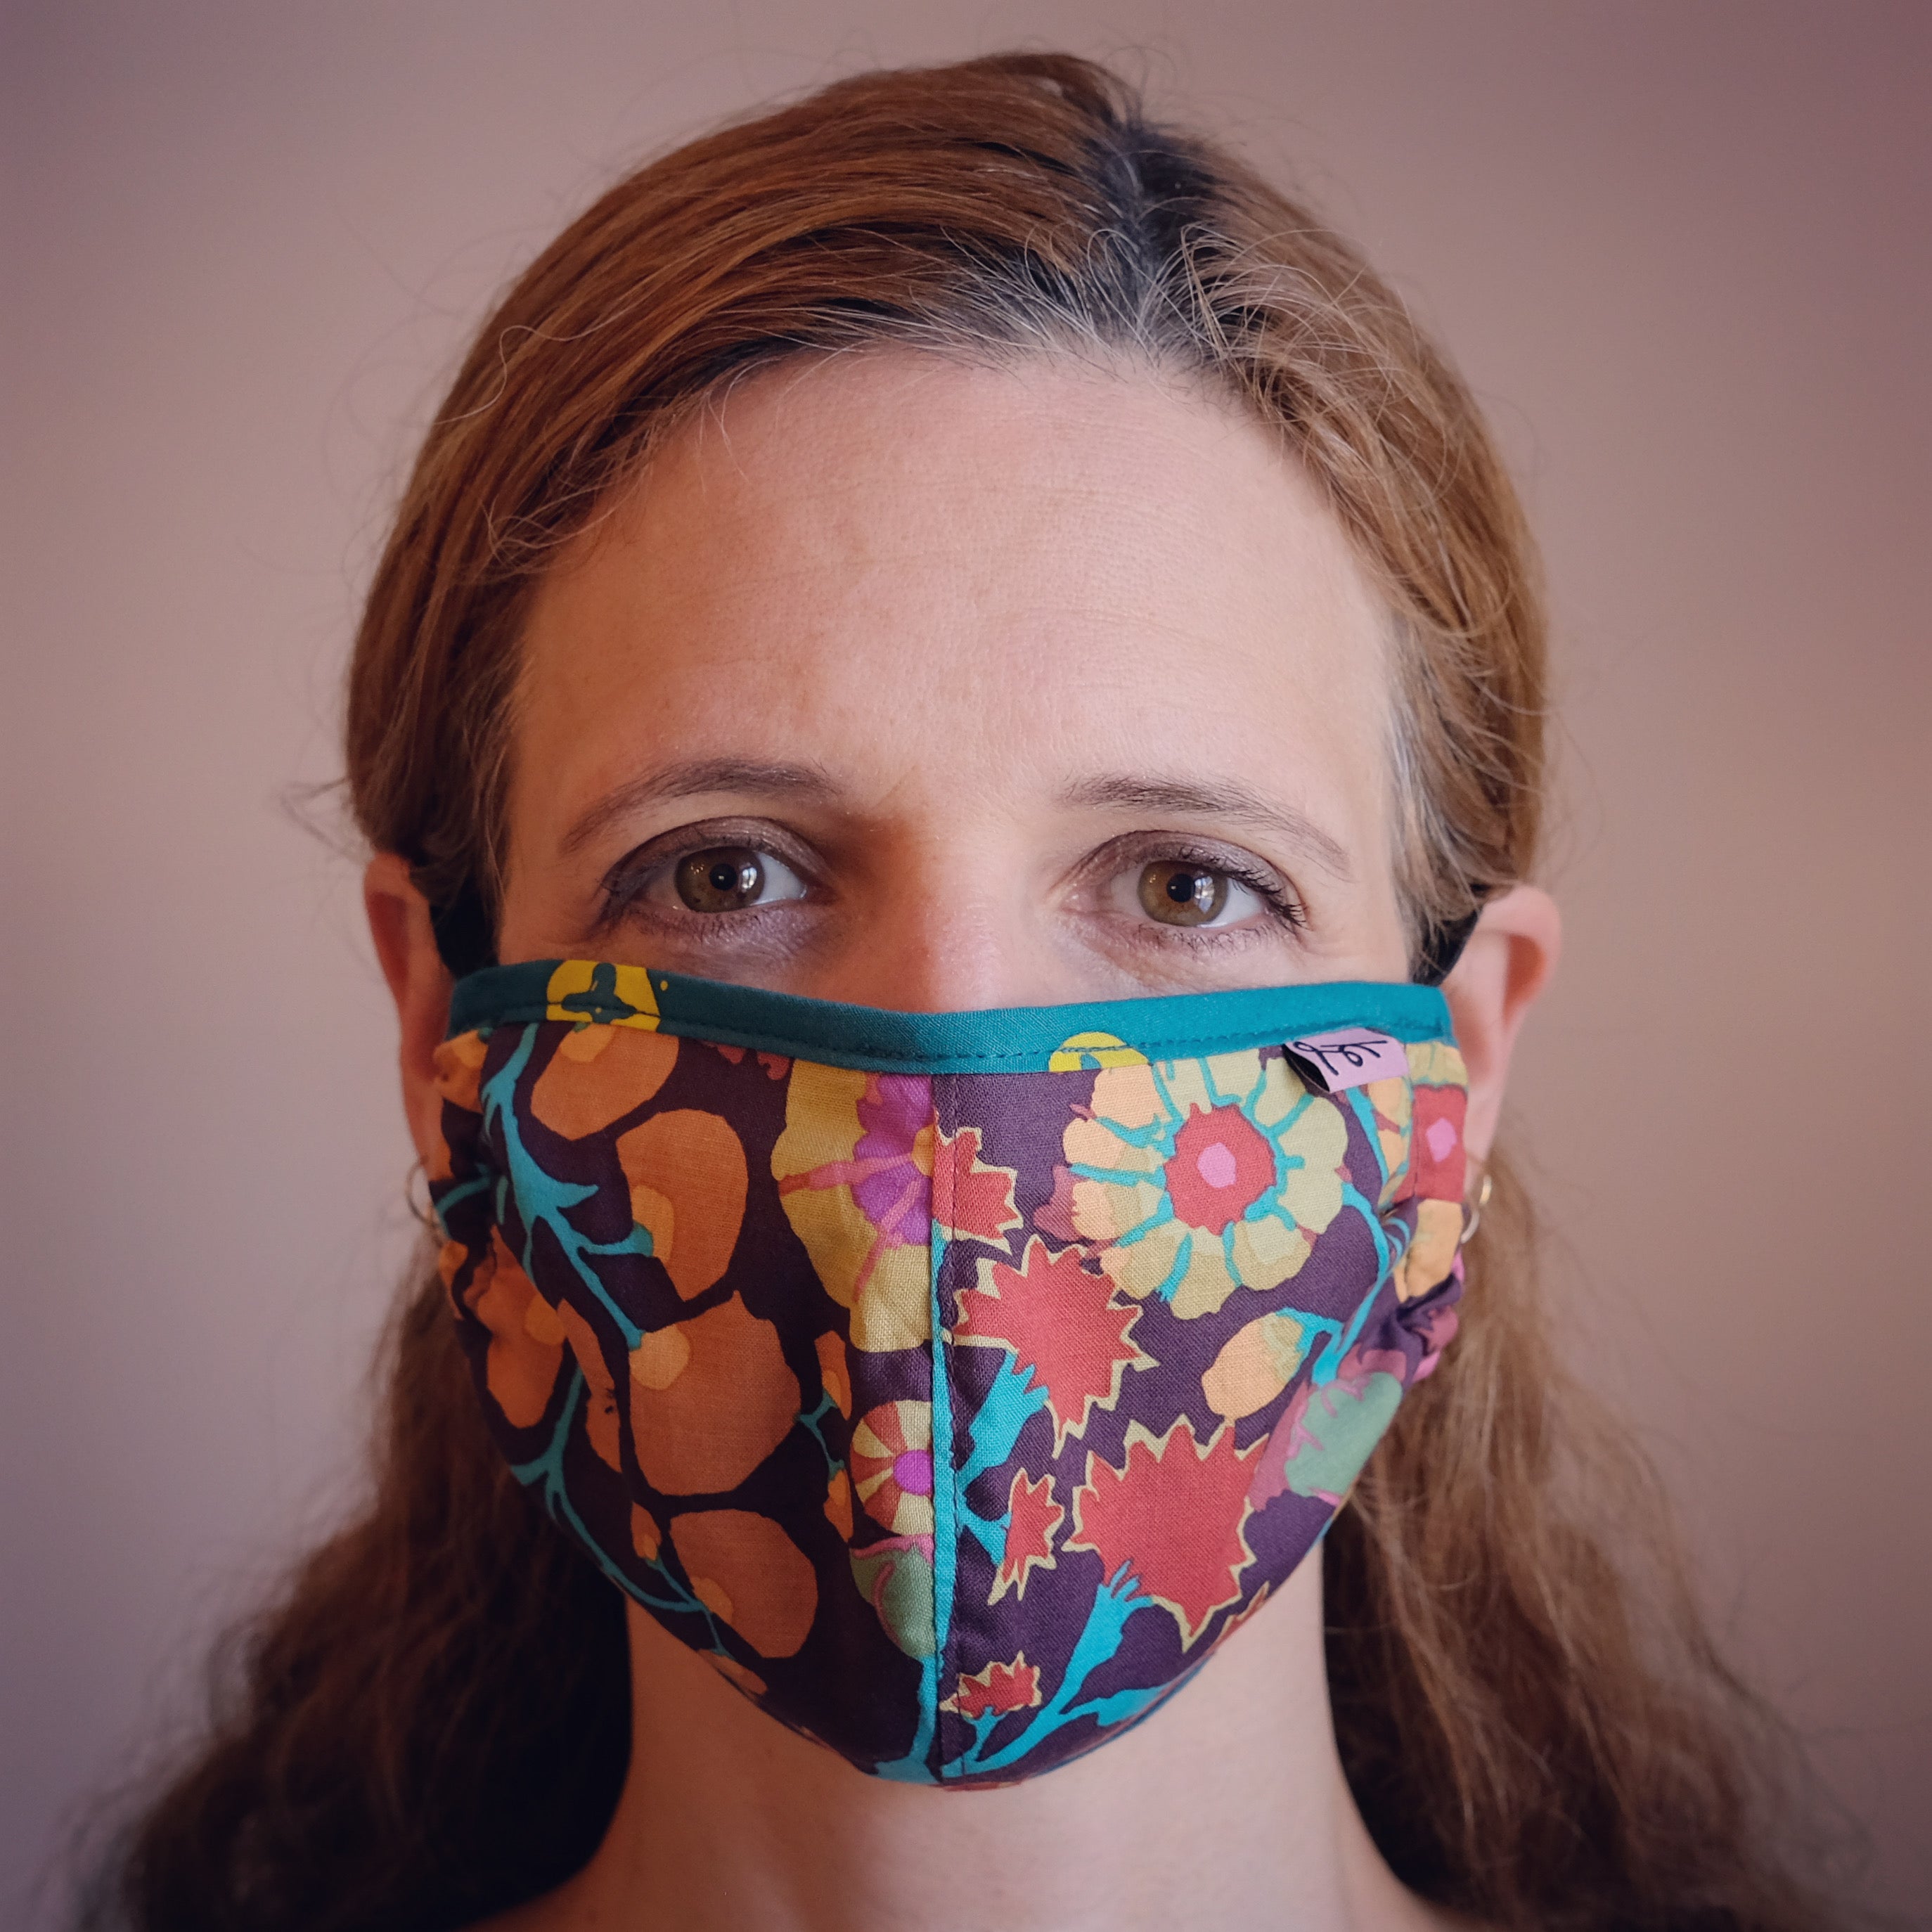 Katrin Leblond wearing face mask